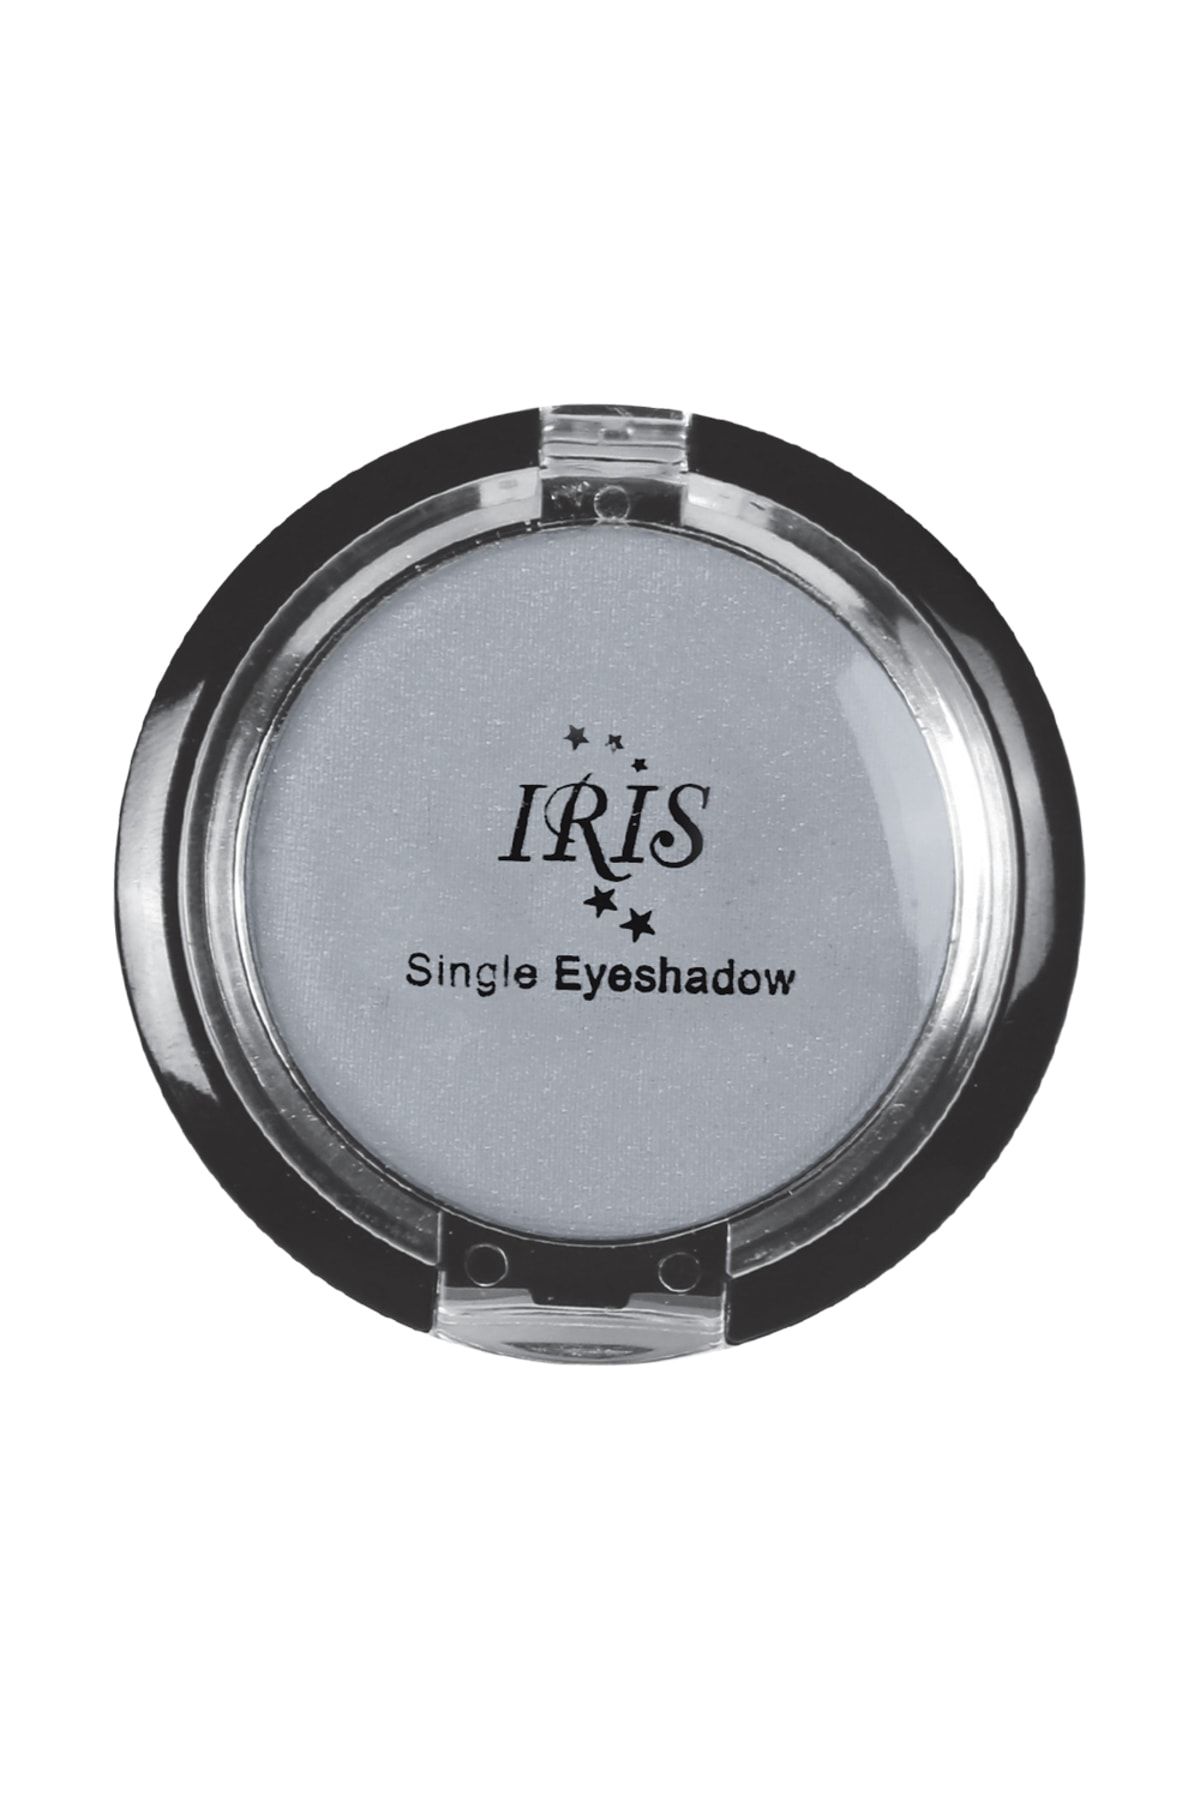 IRIS Göz Farı - Single Eyeshadow 017 8699195992843